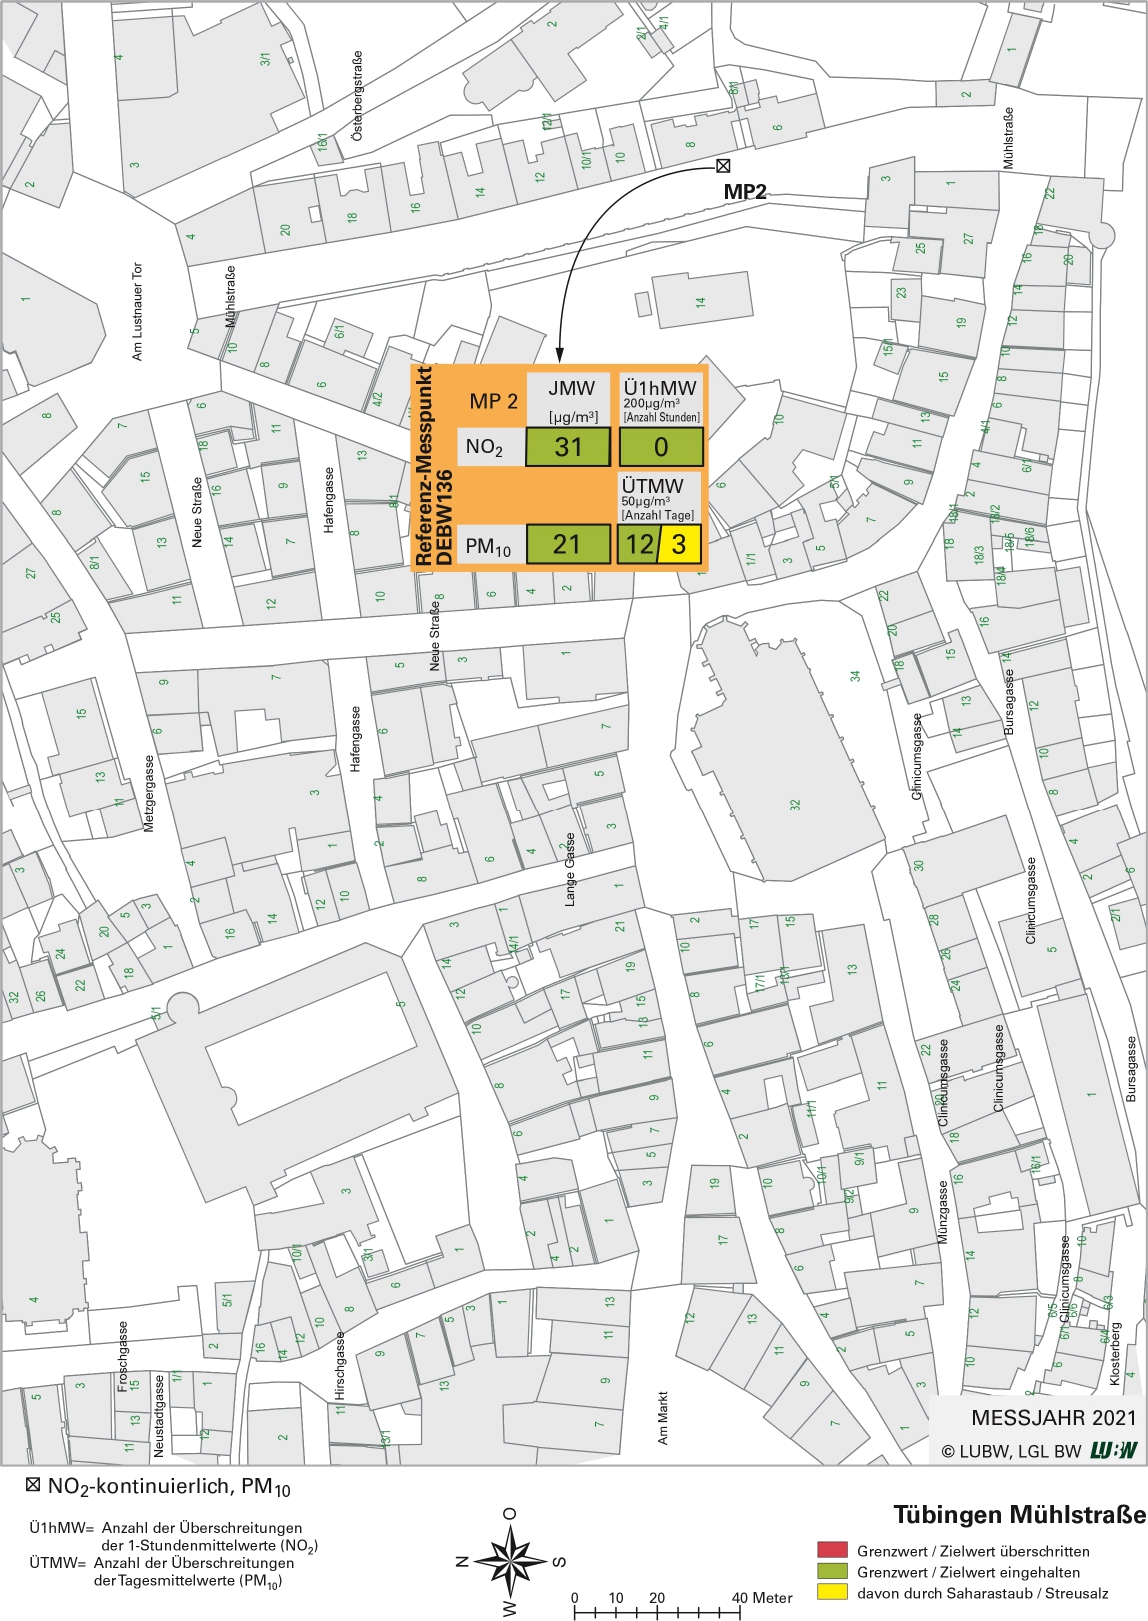 Kartenausschnitt, der die Lage der Messstelle Tübingen Mühlstraße (Referenzmesspunkt) zeigt. Dargestellt sind zudem die Ergebnisse (Jahresmittelwerte 2021, Überschreitungen 2021) der gemessenen Belastung durch Stickstoffdioxid und Partikel PM10.